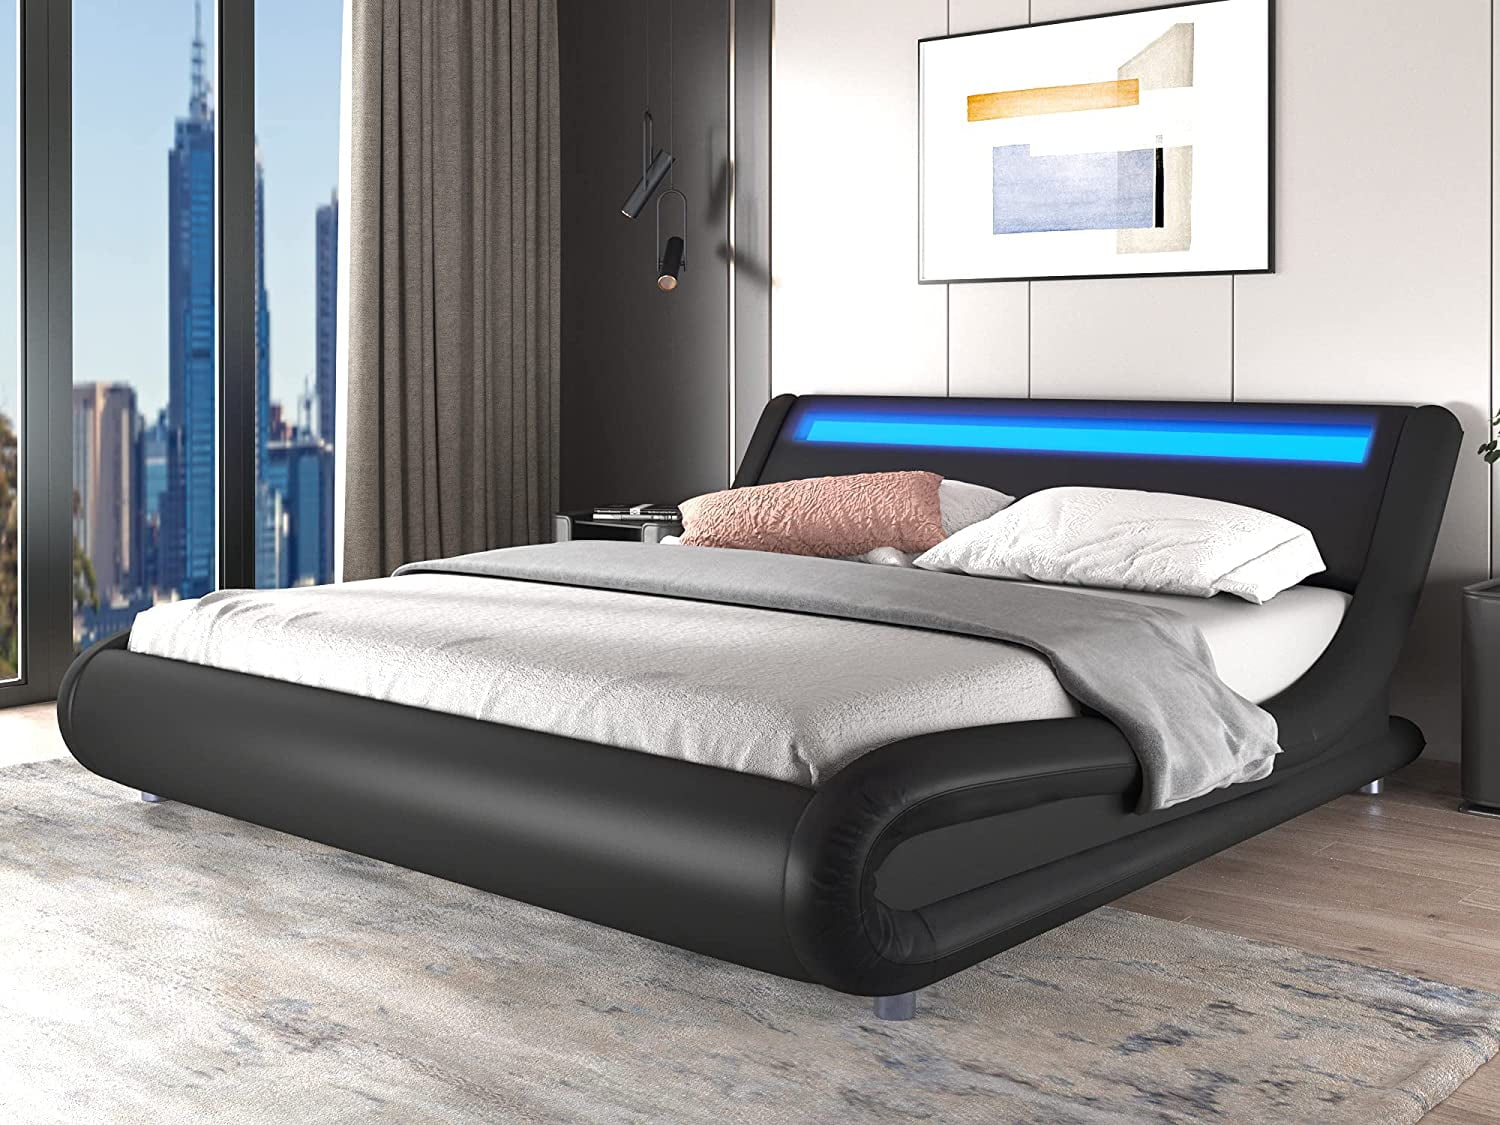 QUEEN SIZE Modern Bed Frame Bedroom Platform w/LED Light Headboard Black New 